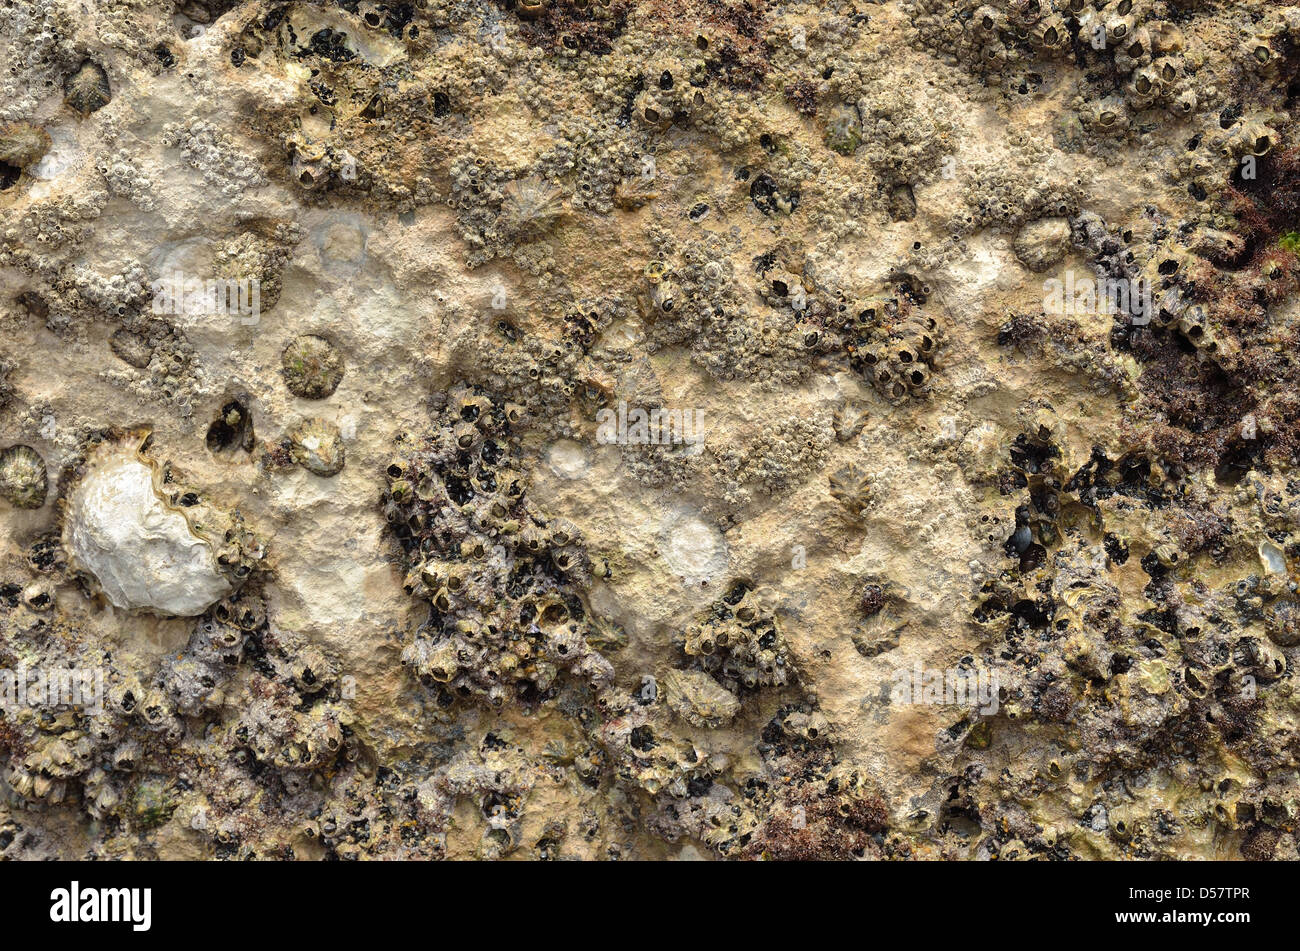 Spongy stone background of the sea floor Stock Photo